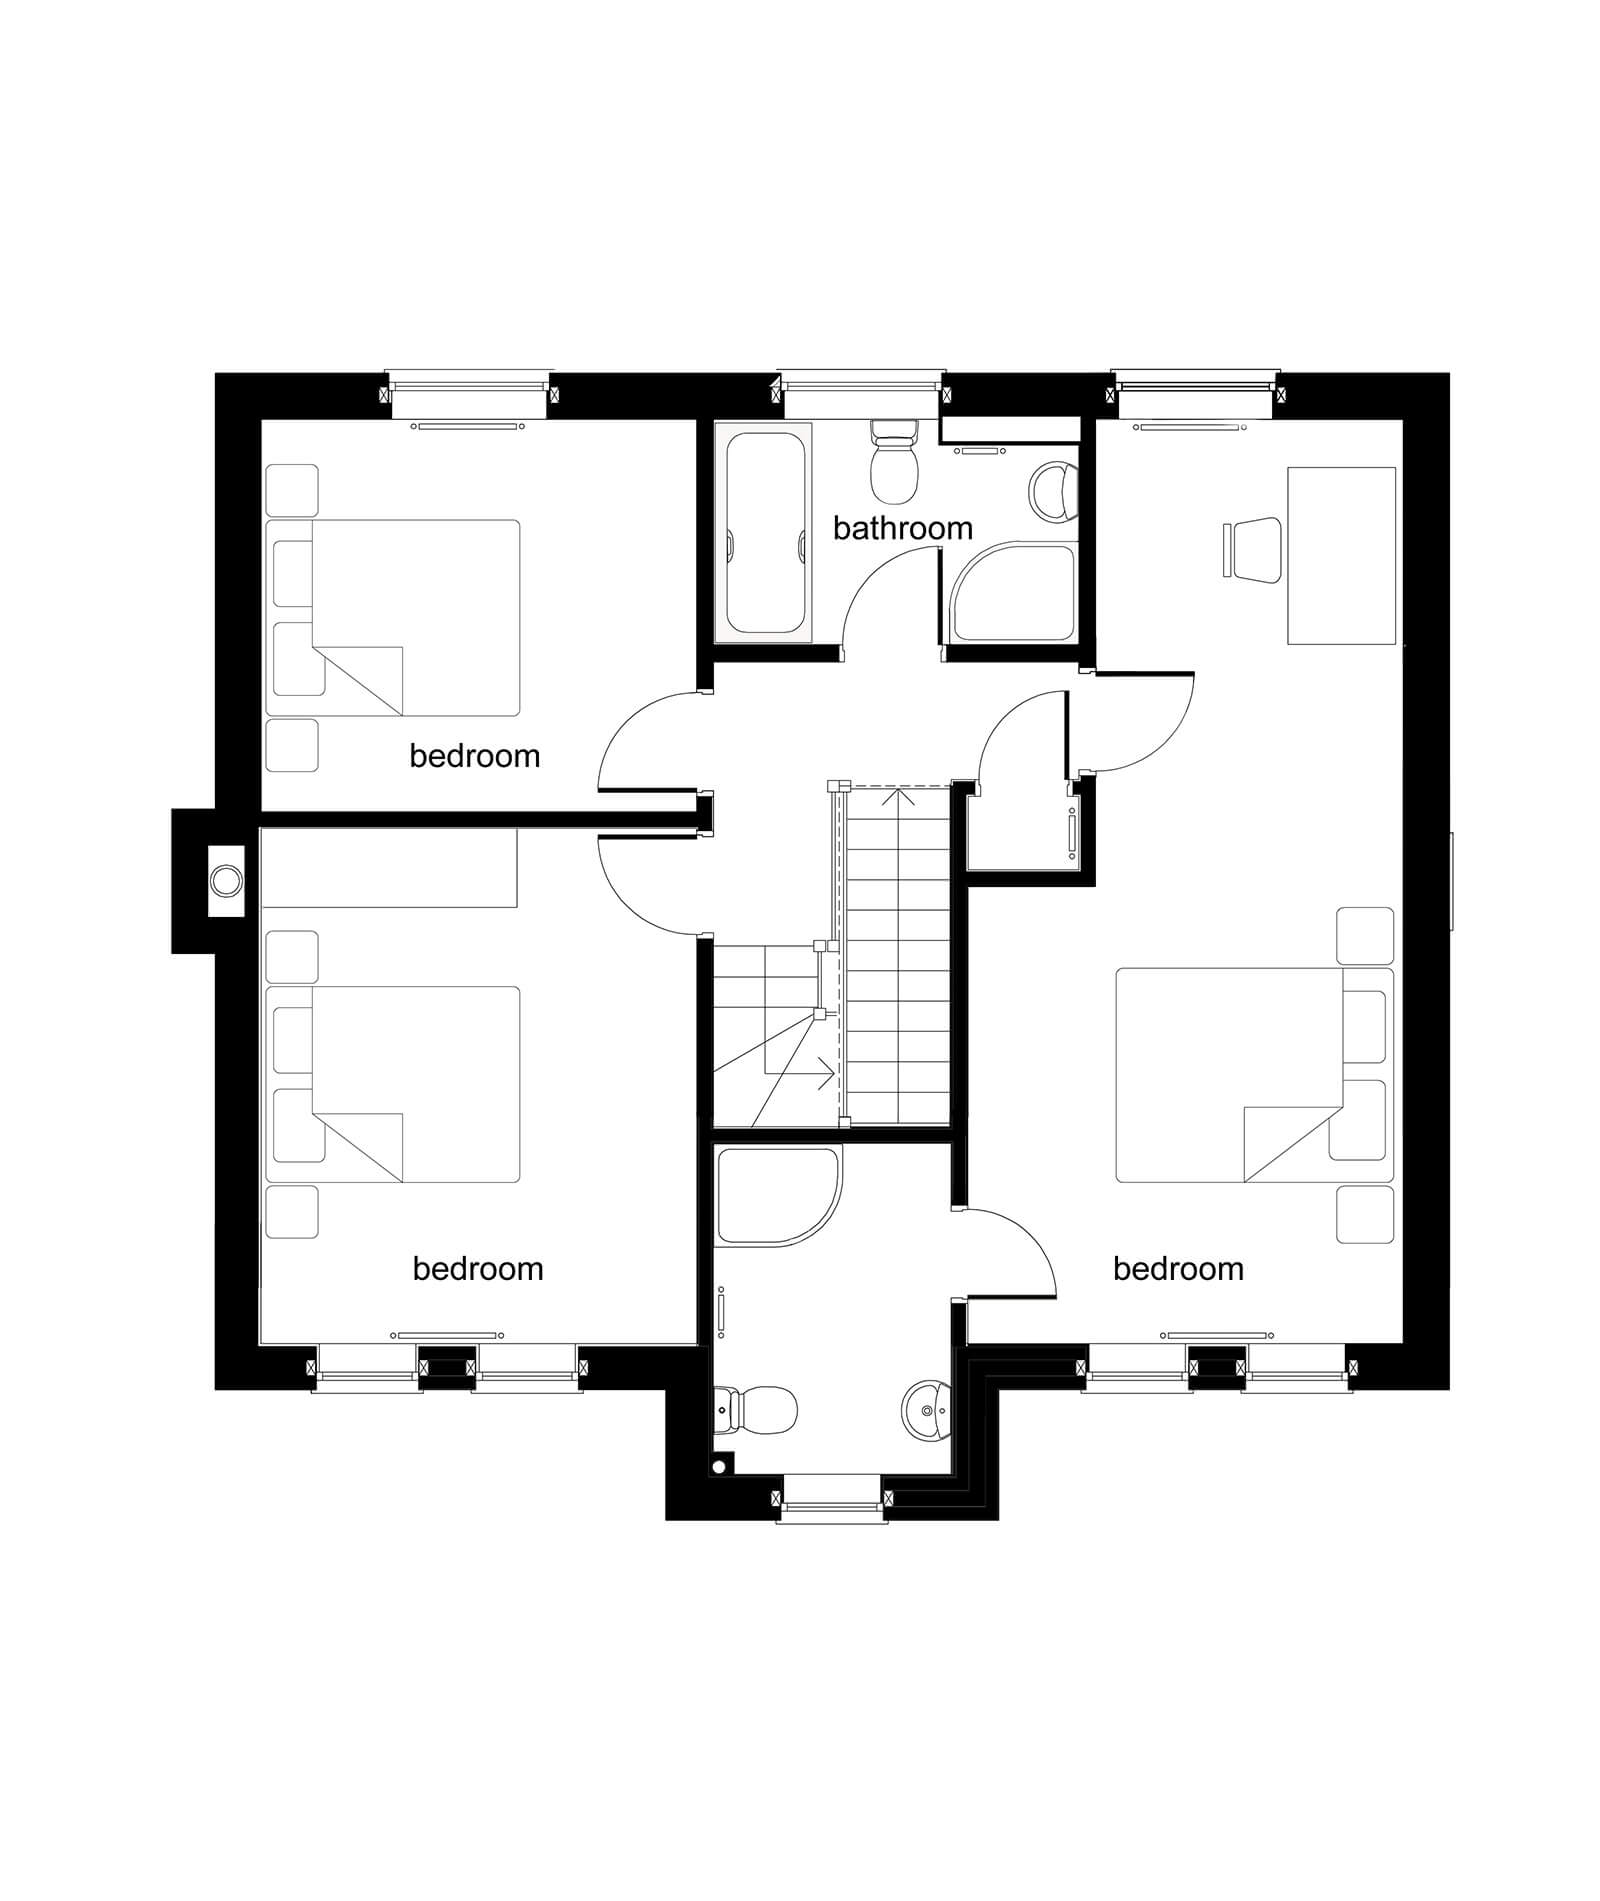 Grange House - Plot 4-6 - First Floor